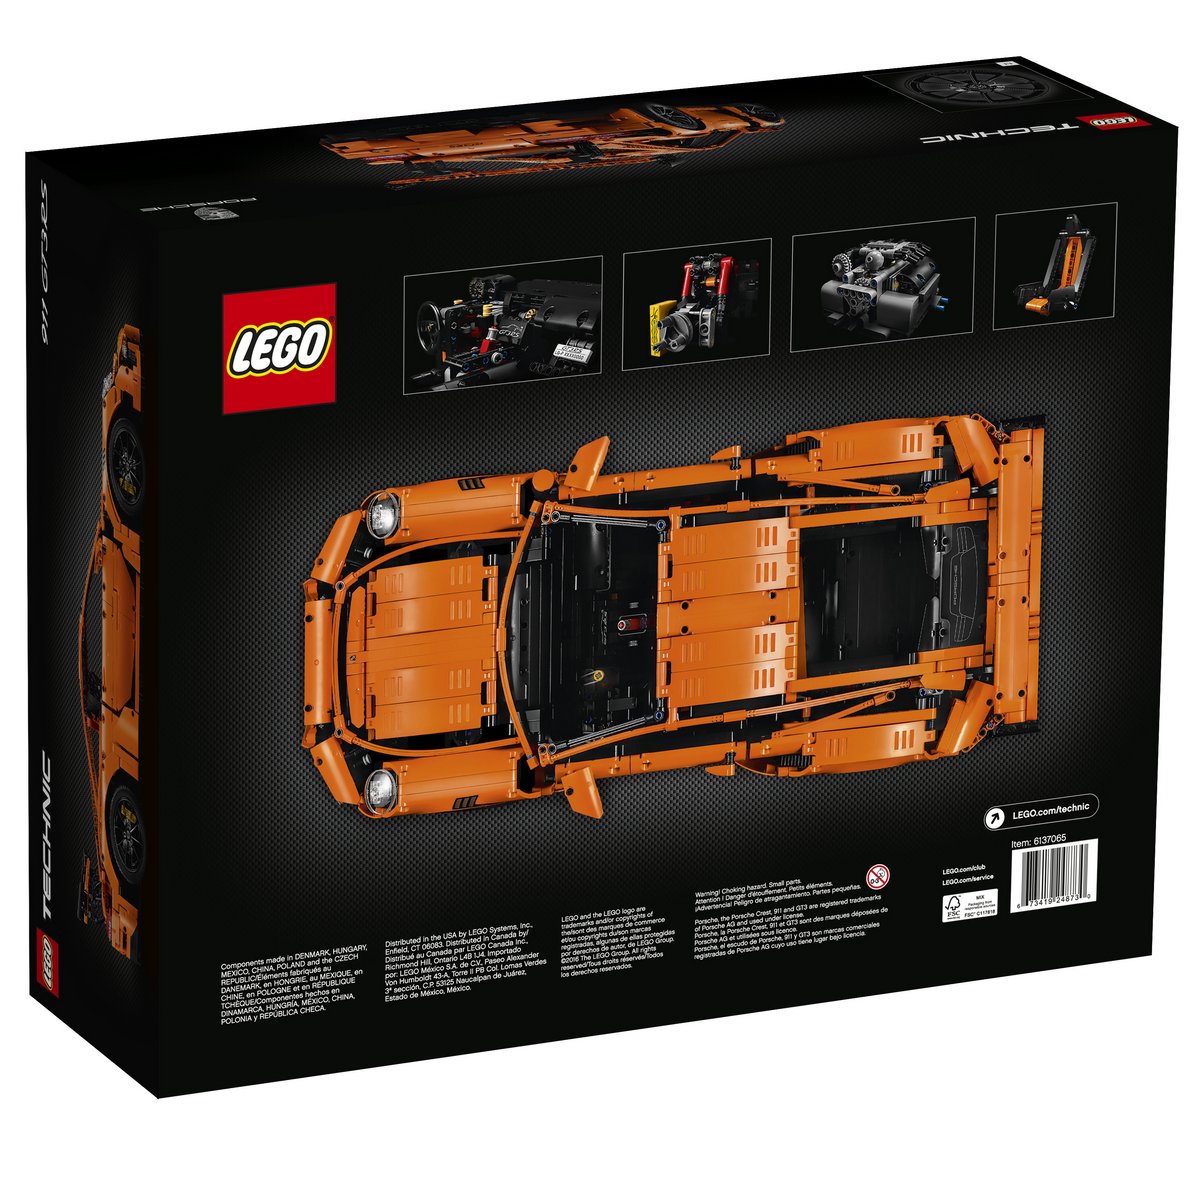 LEGO Technic Set 42056 Porsche 911 GT3 RS Box Back View